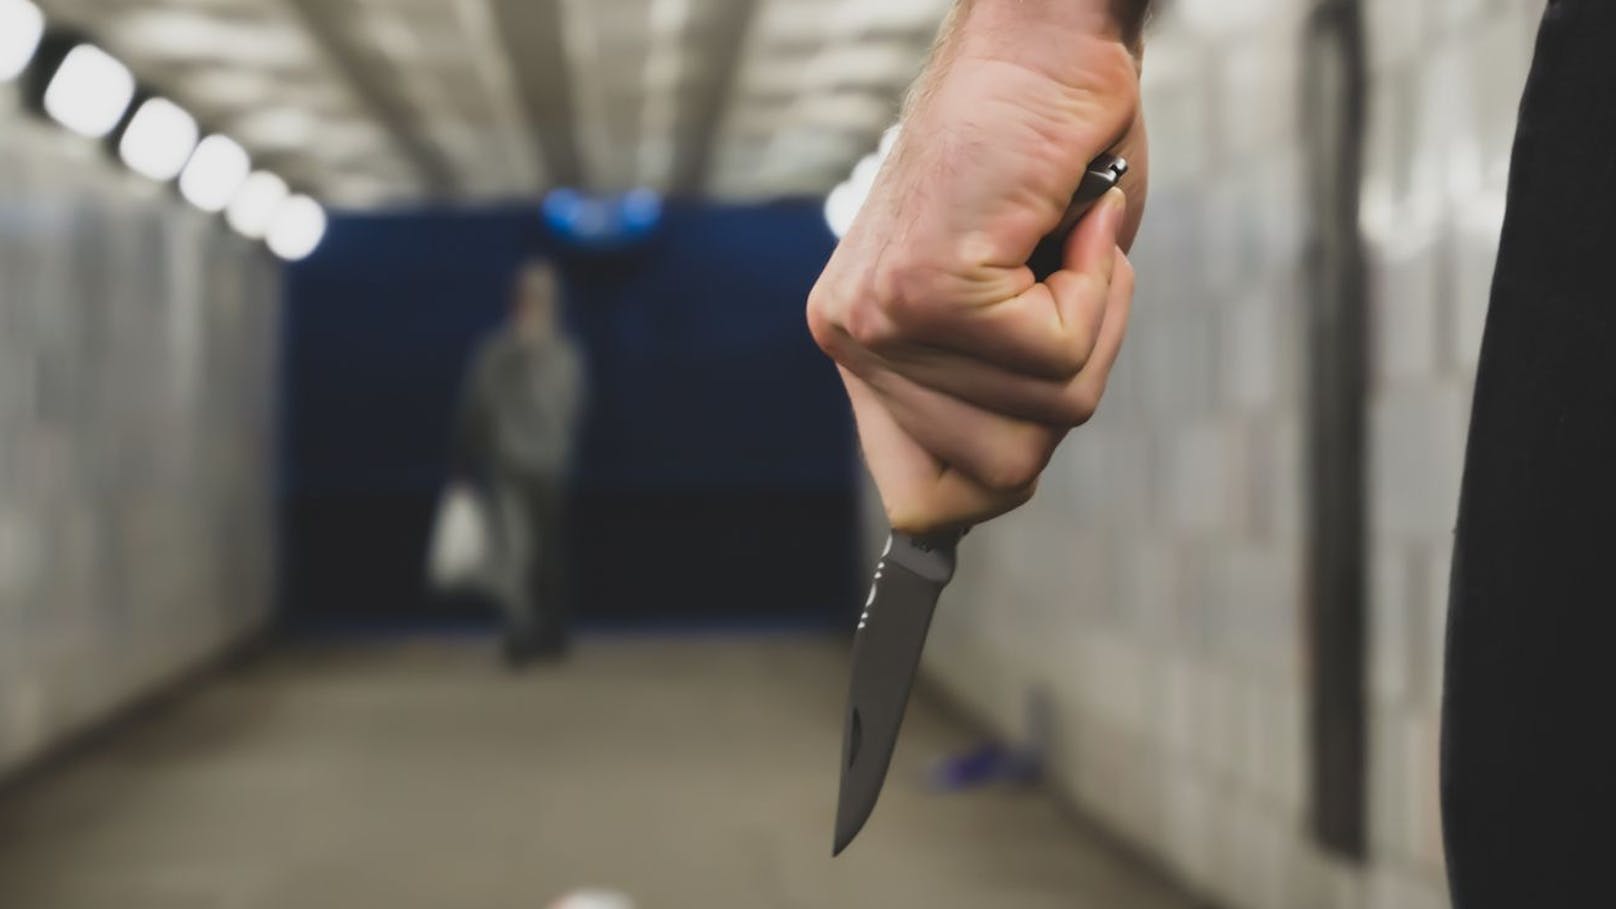 Messer-Attacke in Favoriten – 23-Jähriger sticht zu